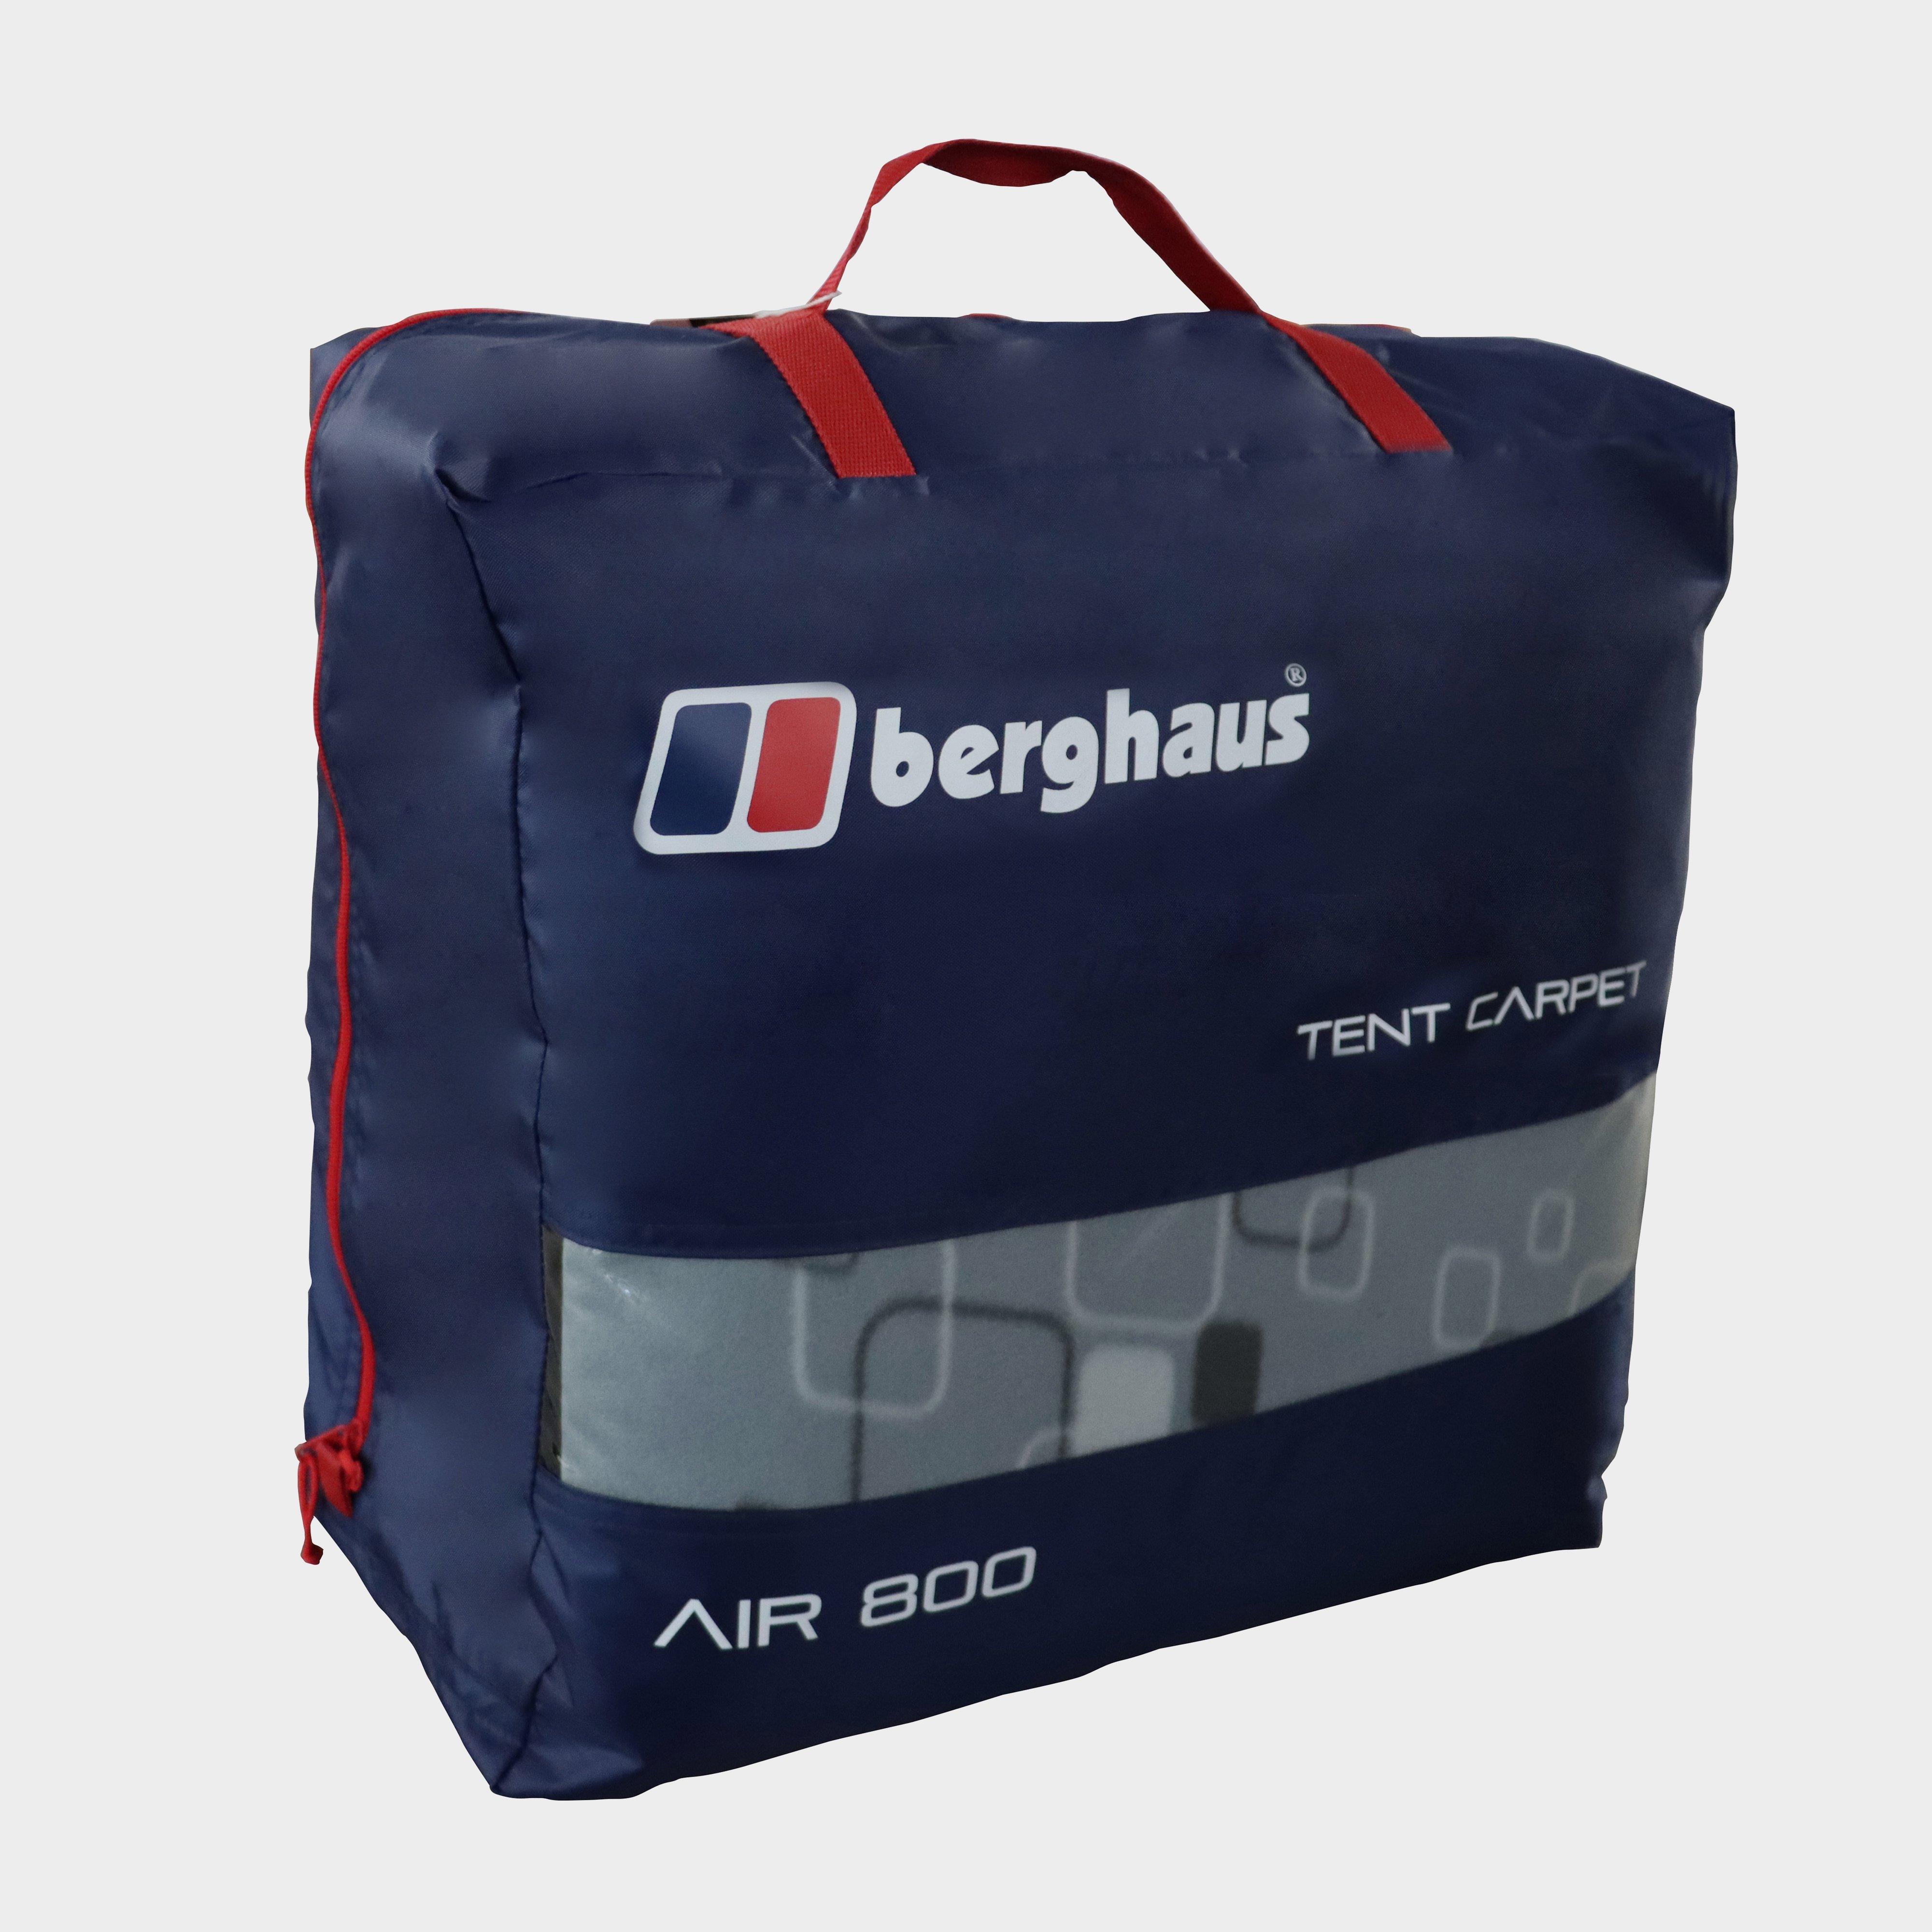  Berghaus Air 800/8.1/8 Tent Carpet, Grey